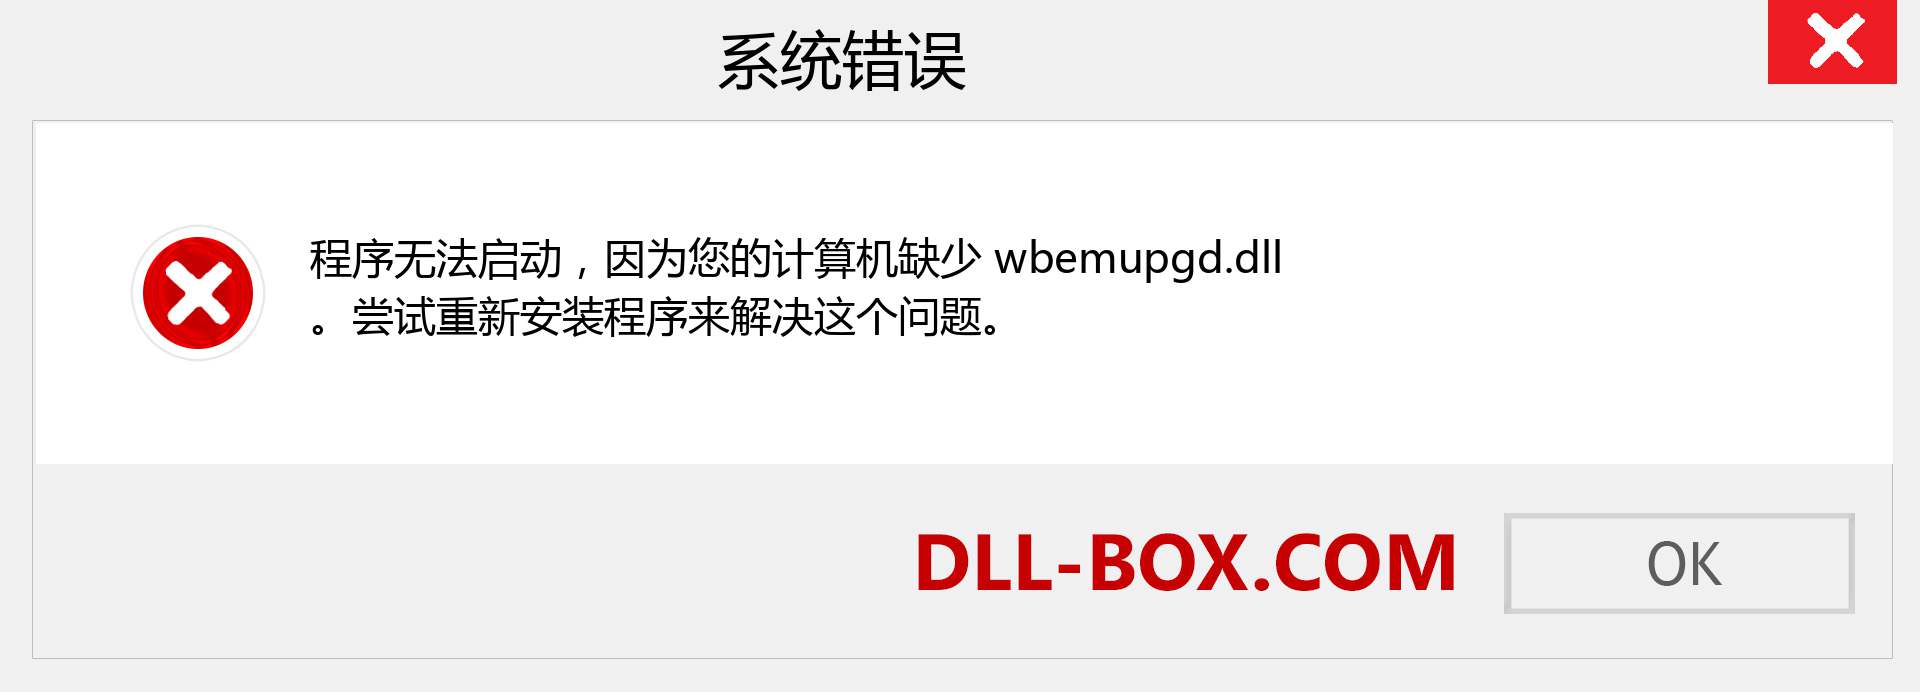 wbemupgd.dll 文件丢失？。 适用于 Windows 7、8、10 的下载 - 修复 Windows、照片、图像上的 wbemupgd dll 丢失错误